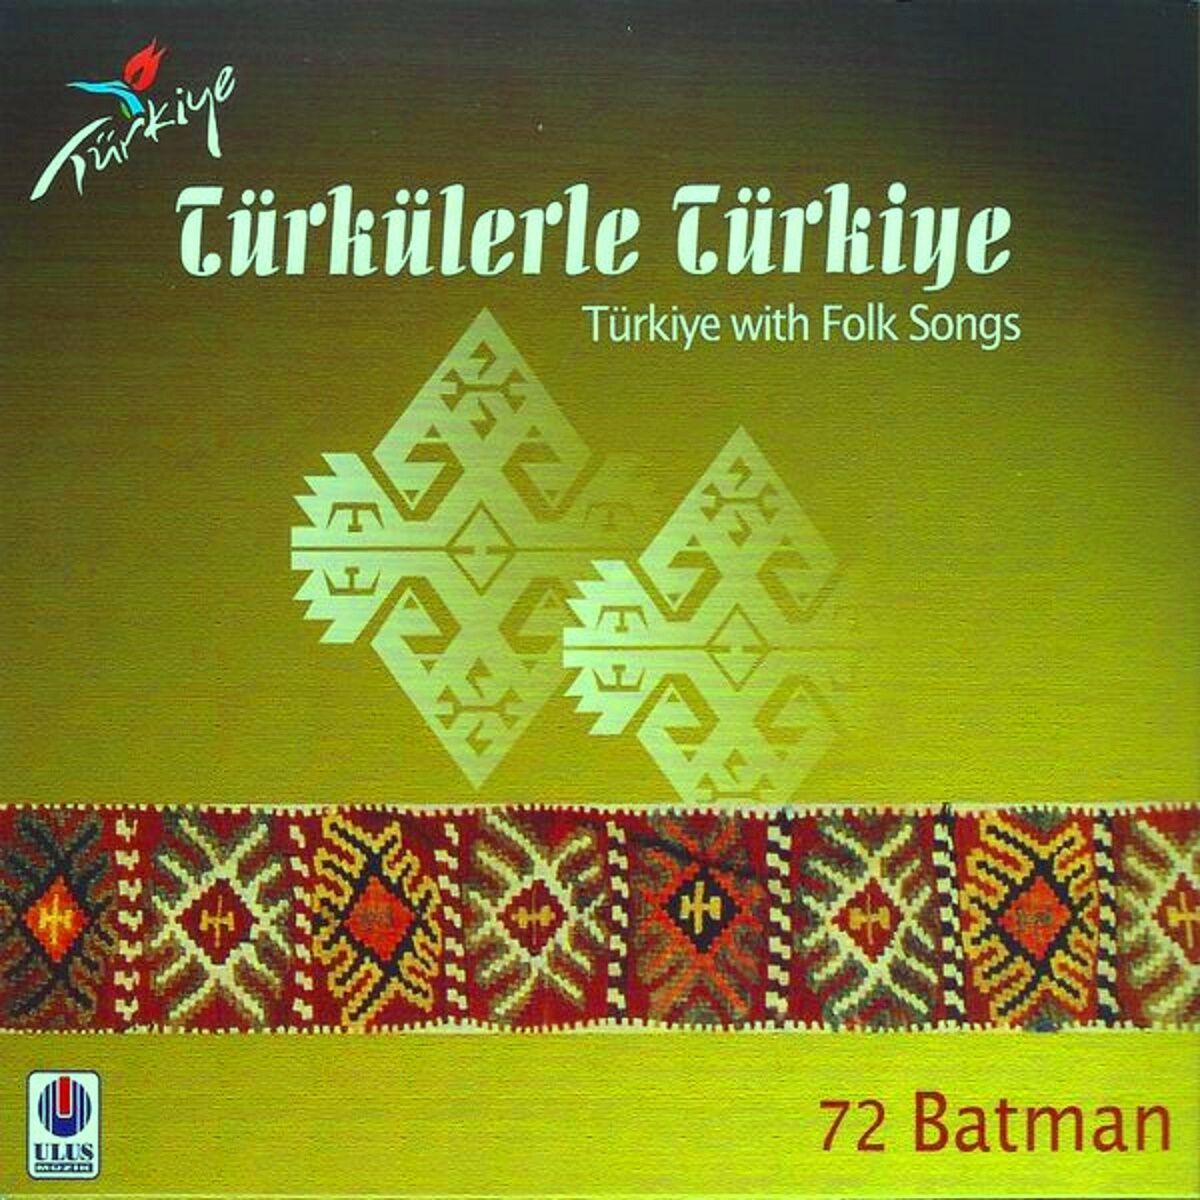 TÜRKÜLERLE TÜRKİYE   (TÜRKİYE WITH FOLK SONGS) 72 BATMAN  (CD)